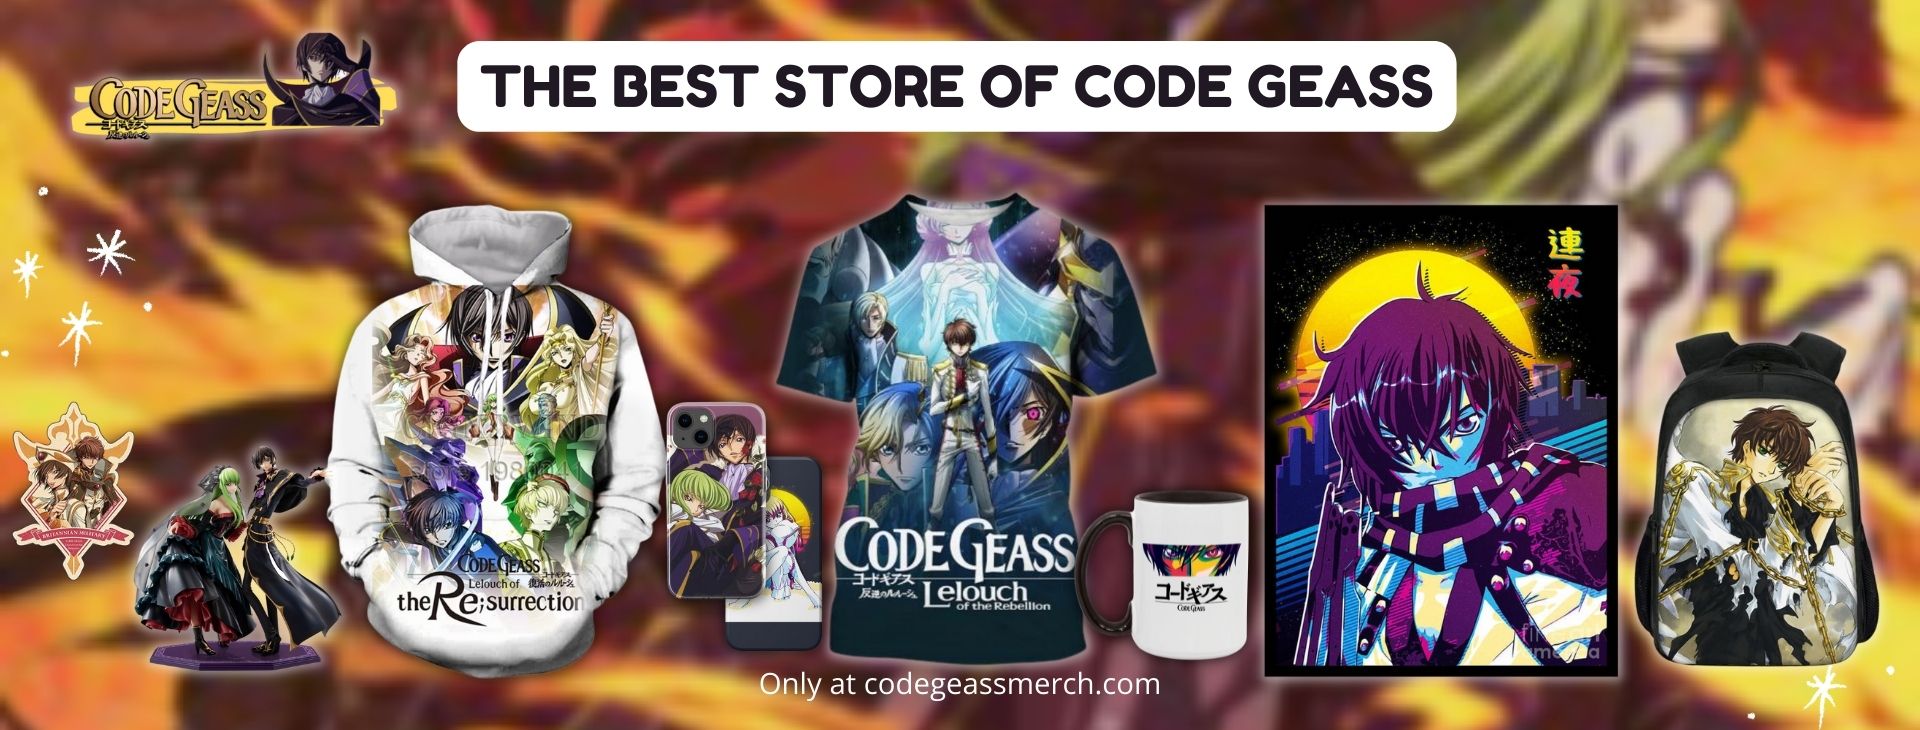 Code Geass Banner - Code Geass Merch